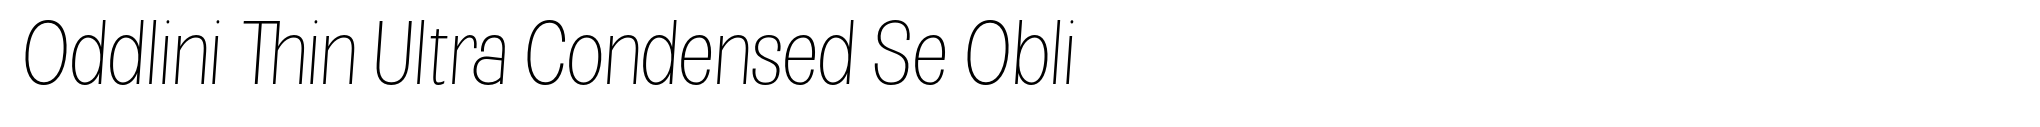 Oddlini Thin Ultra Condensed Se Obli image